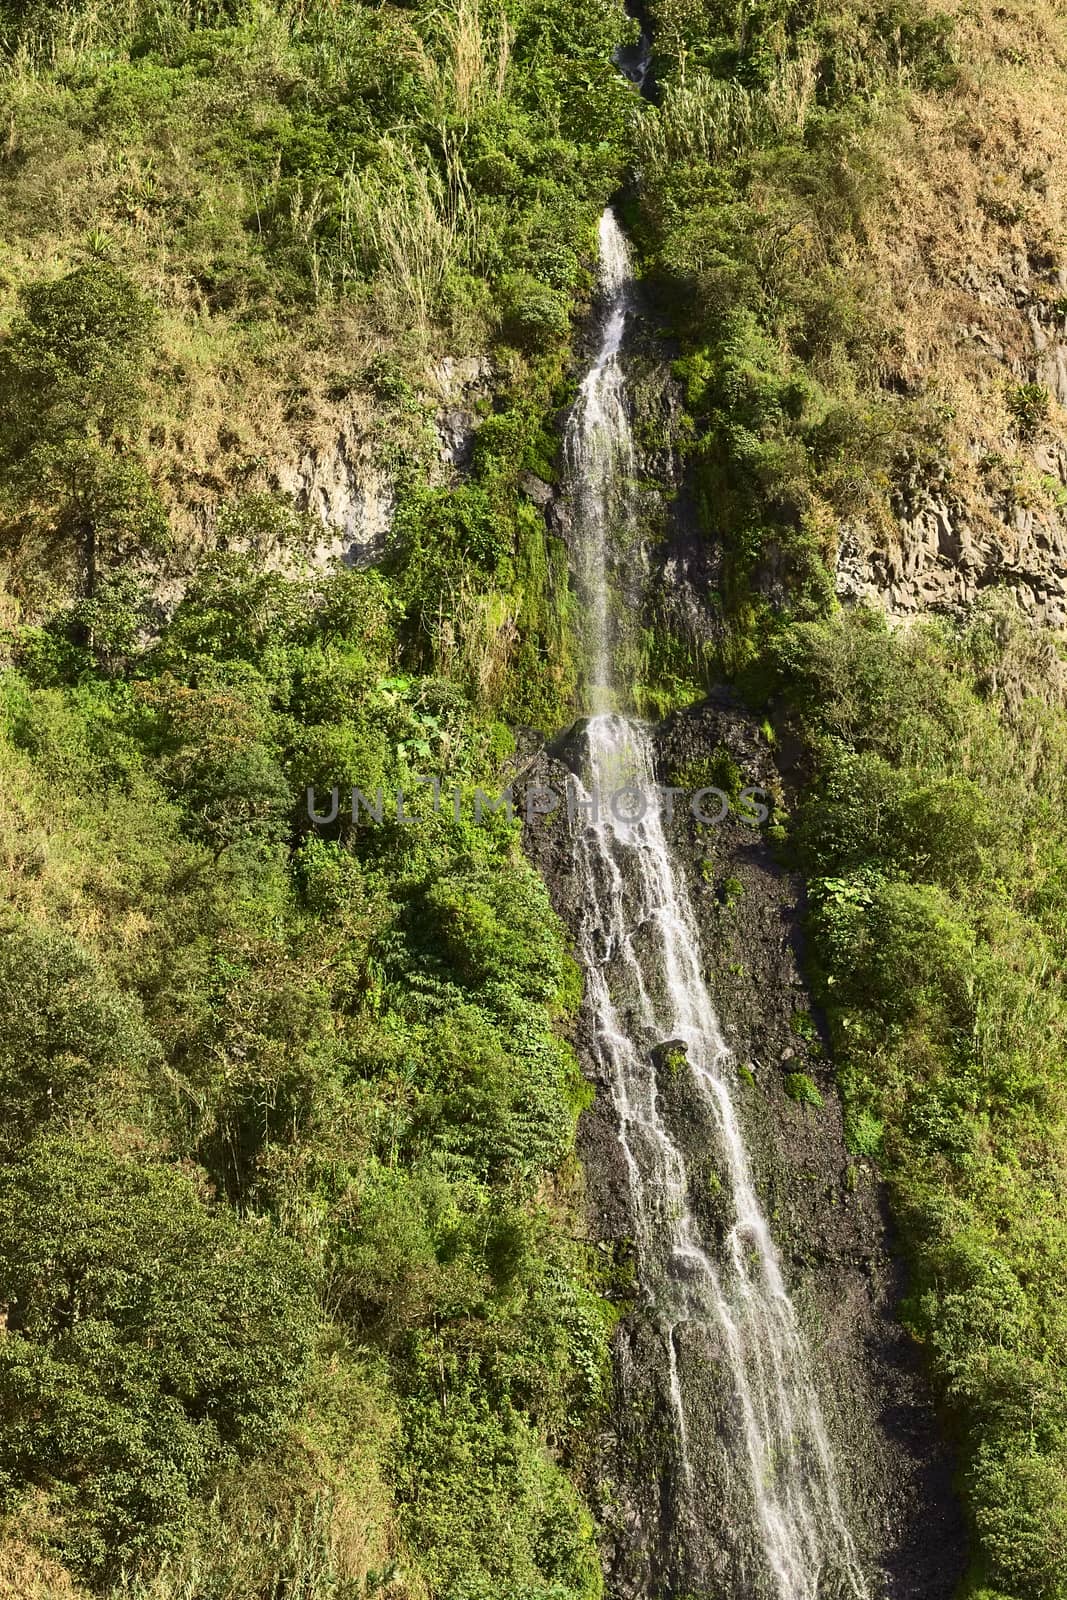 El Cabello del Virgen Waterfall in Banos, Ecuador by ildi